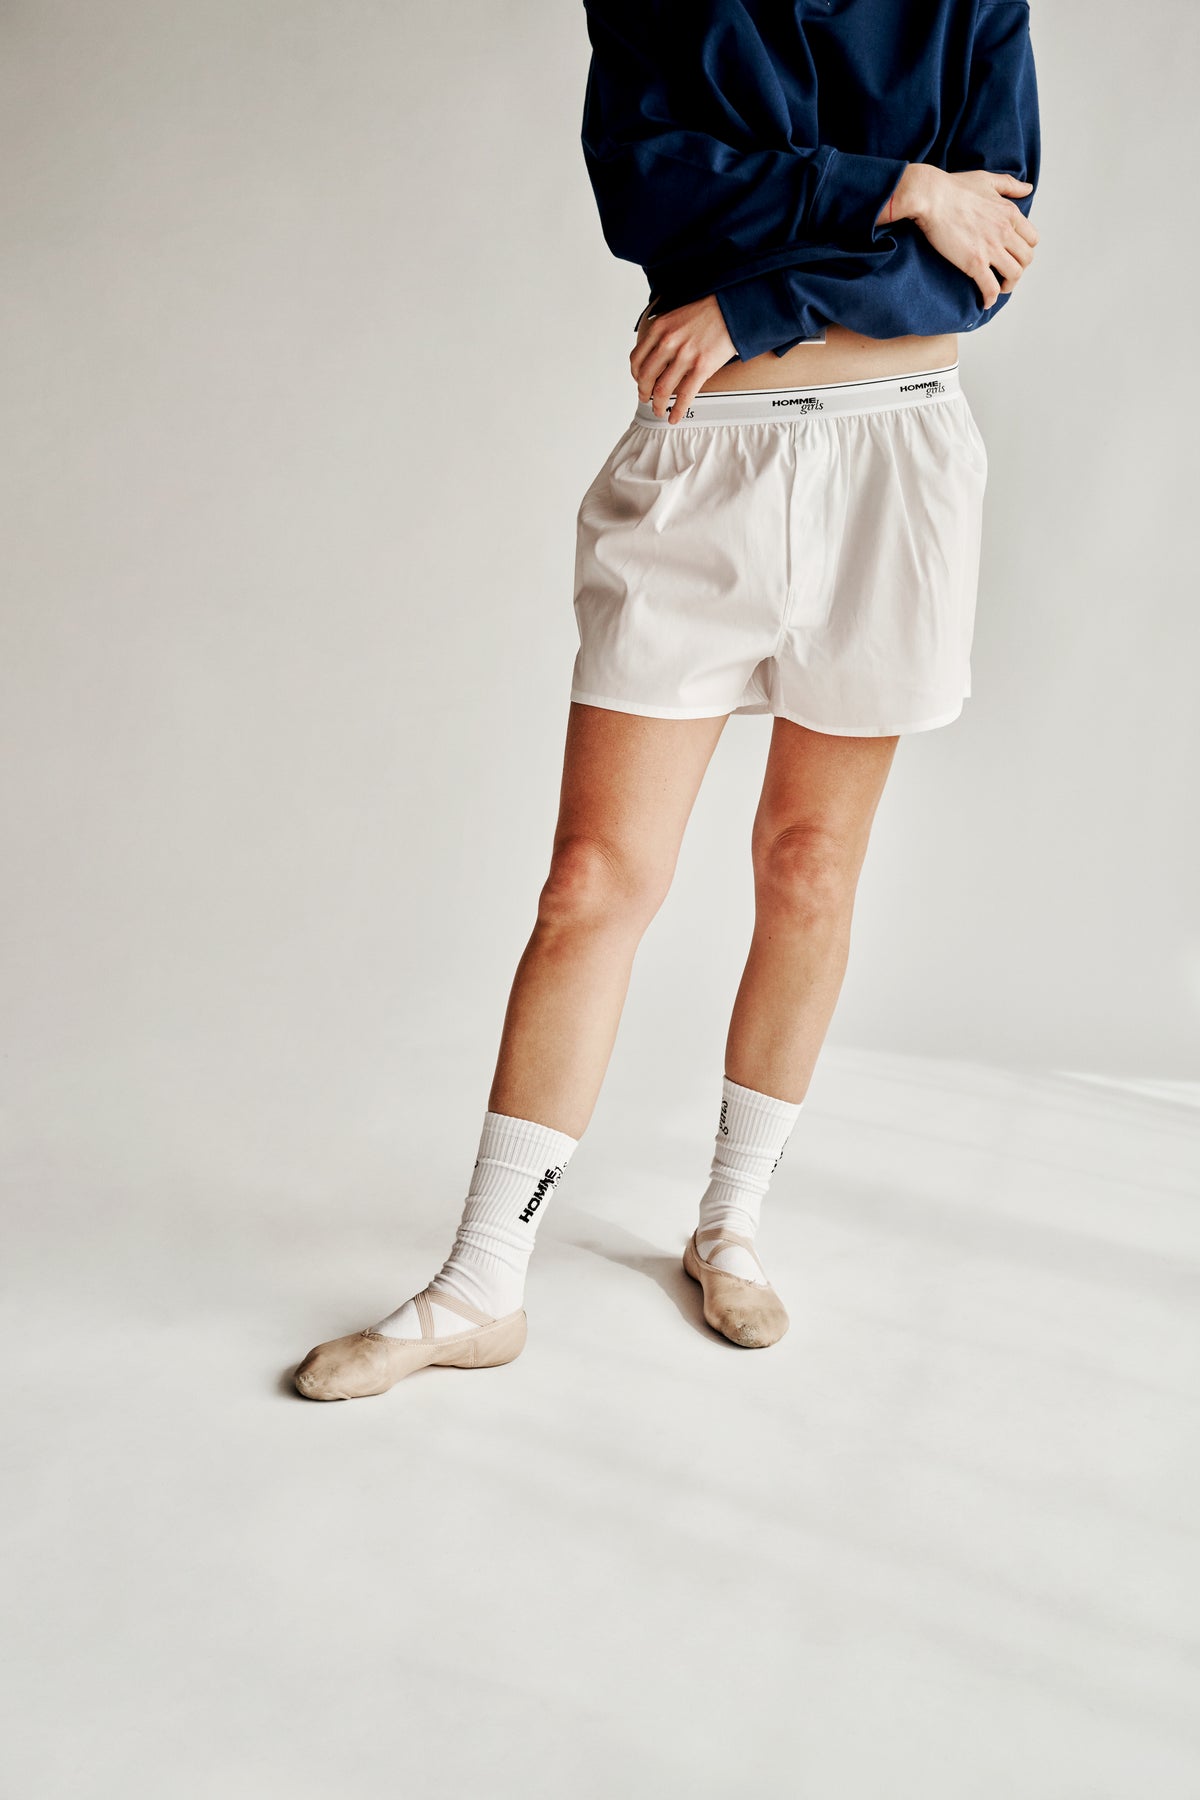 Original White Boxer Shorts – HOMMEGIRLS